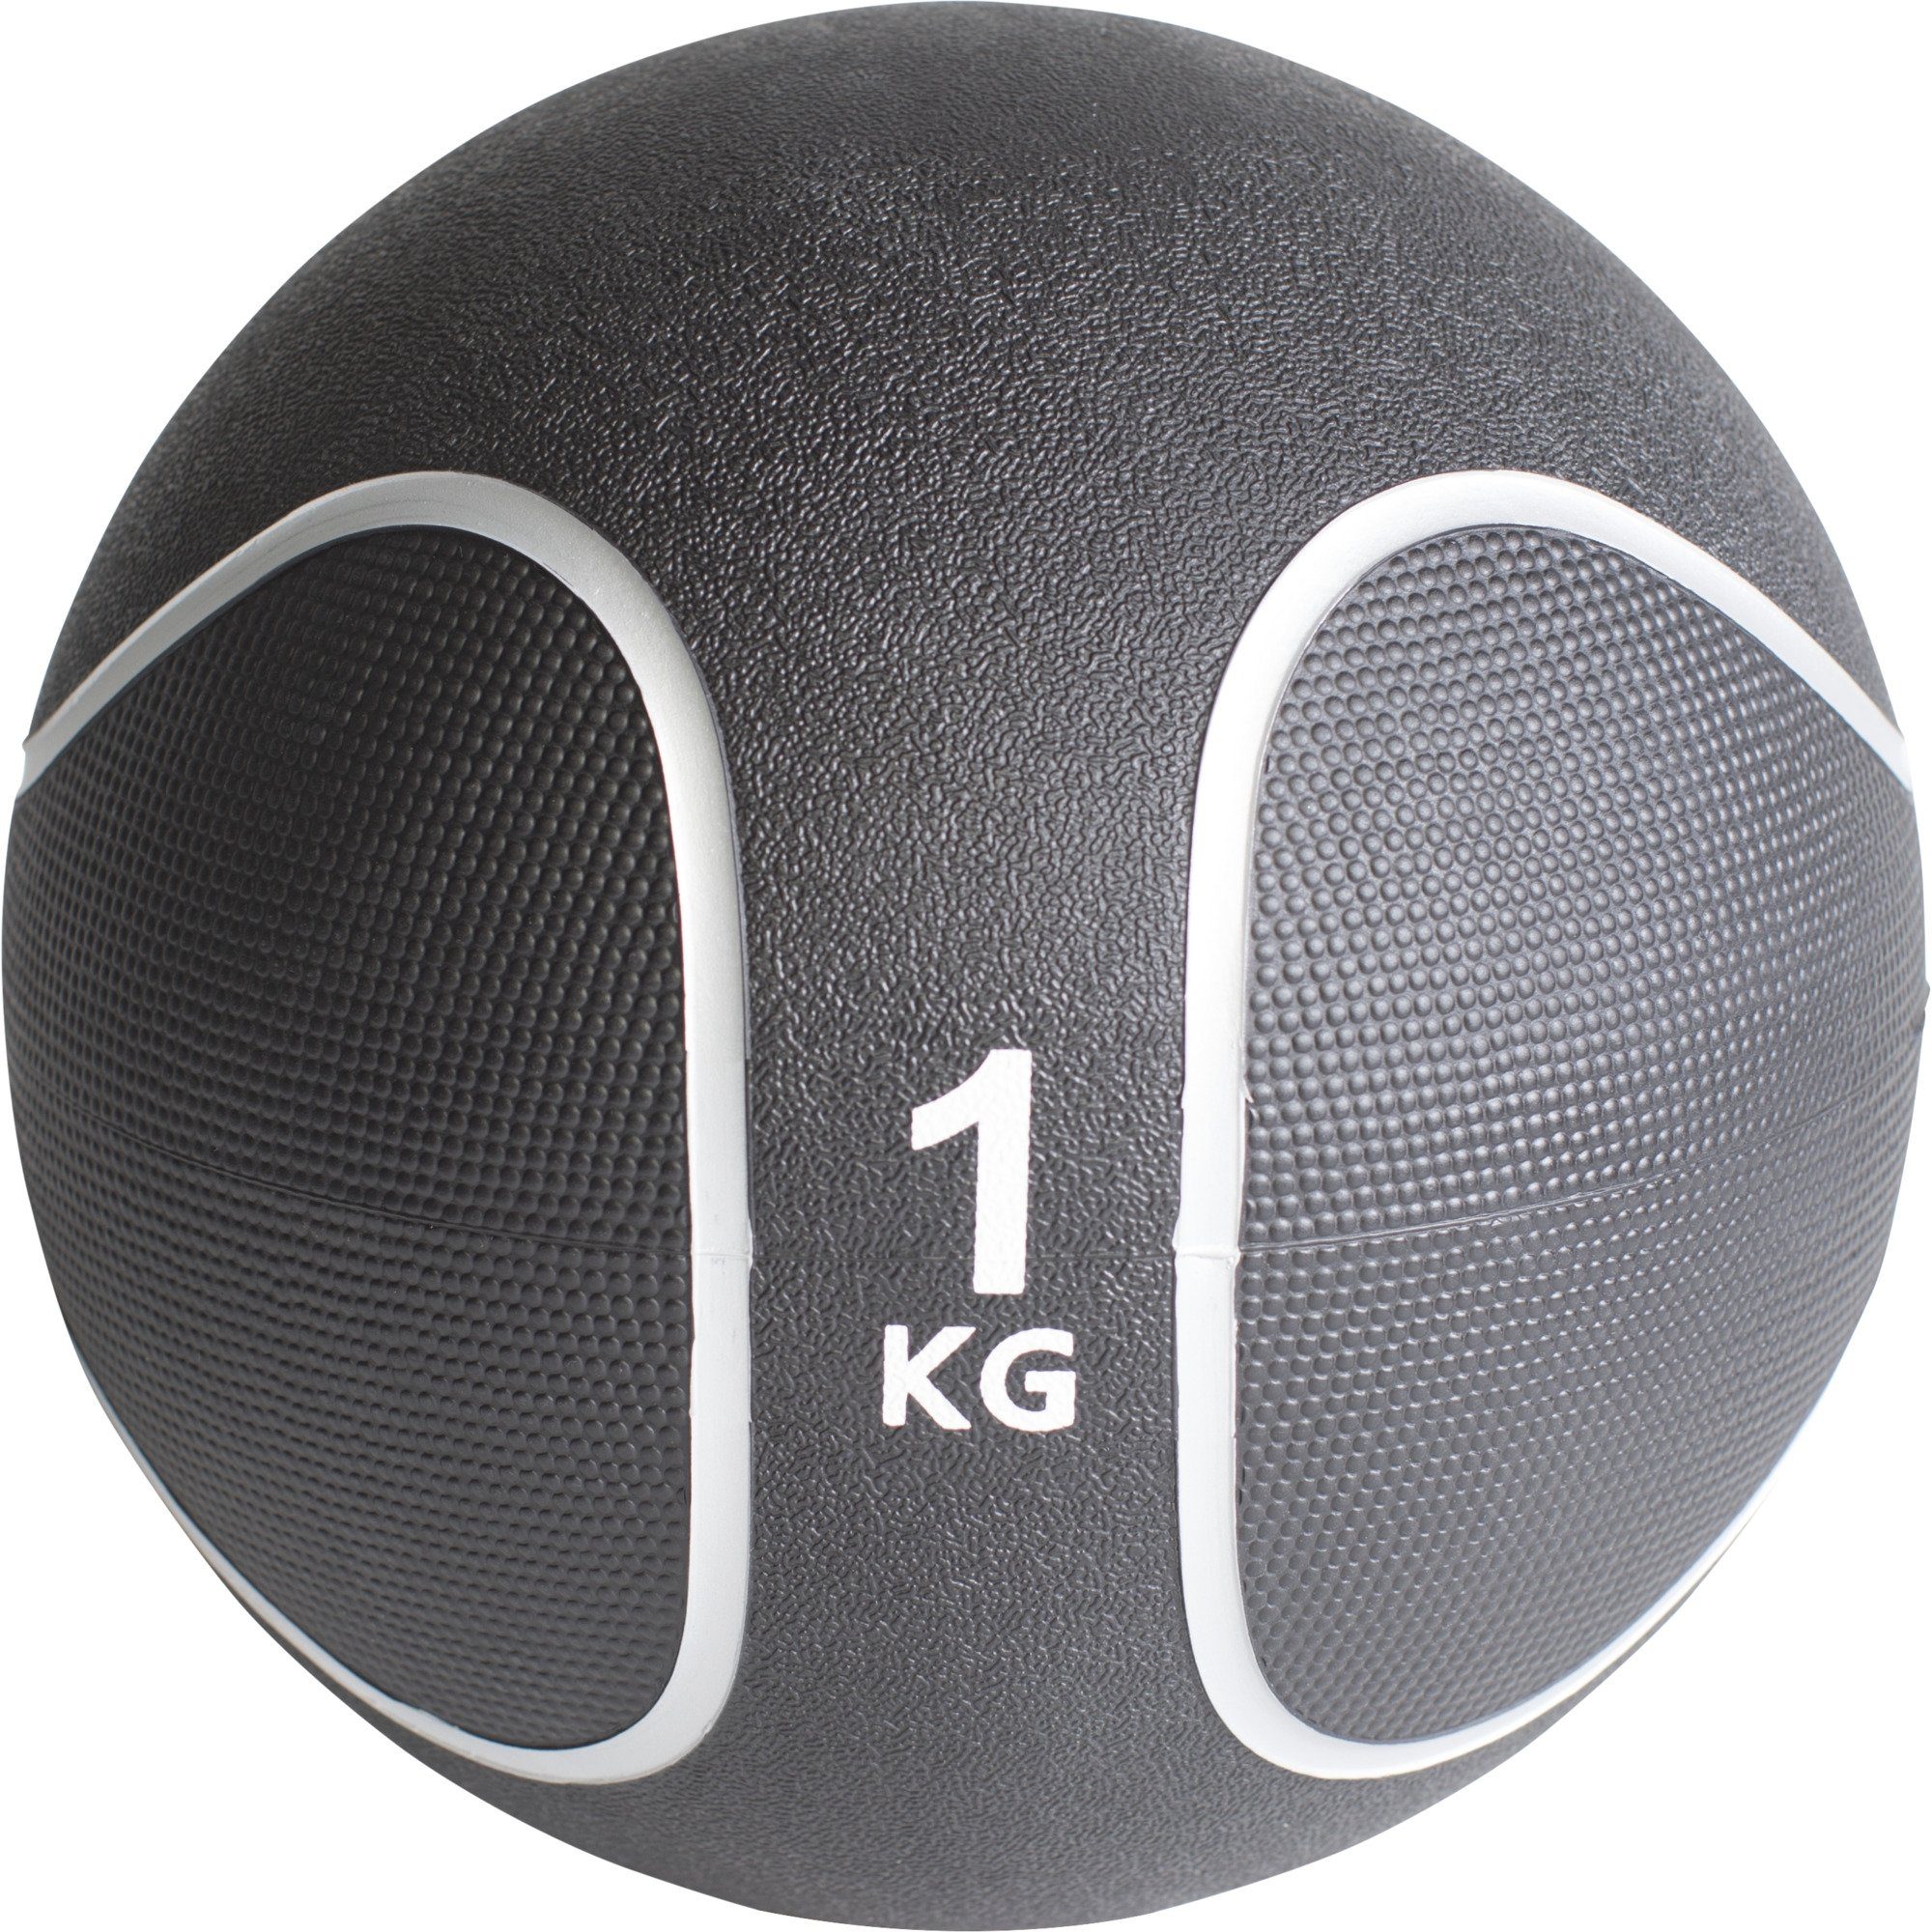 GORILLA SPORTS Medizinball Einzeln / % cm, SET oder Set, KG aus Ø 15 29 Fitnessball 23 rutschfest, Gummi